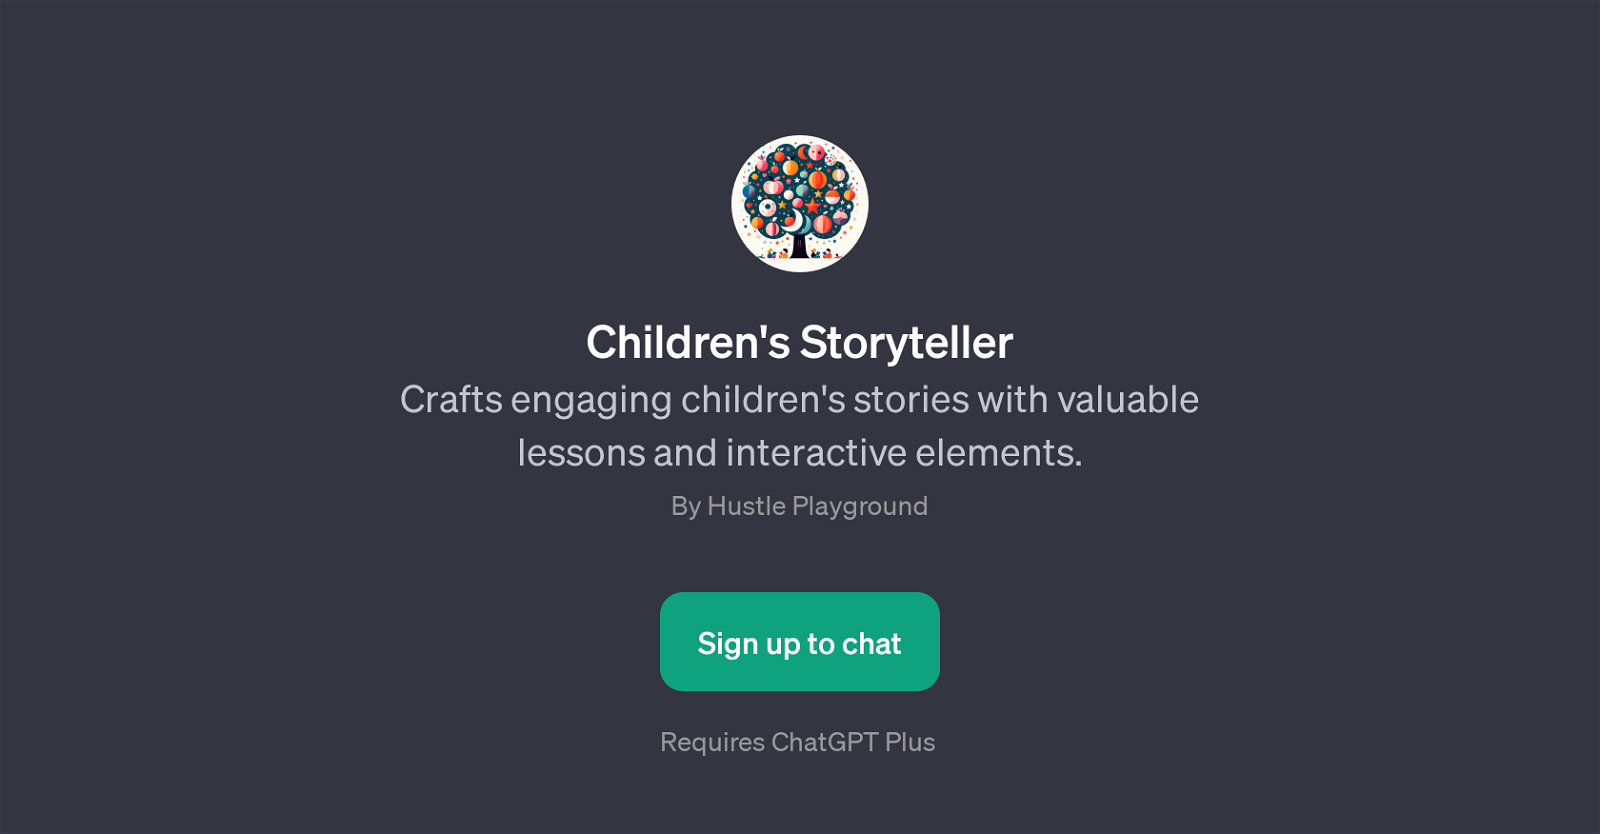 Children's Storyteller website